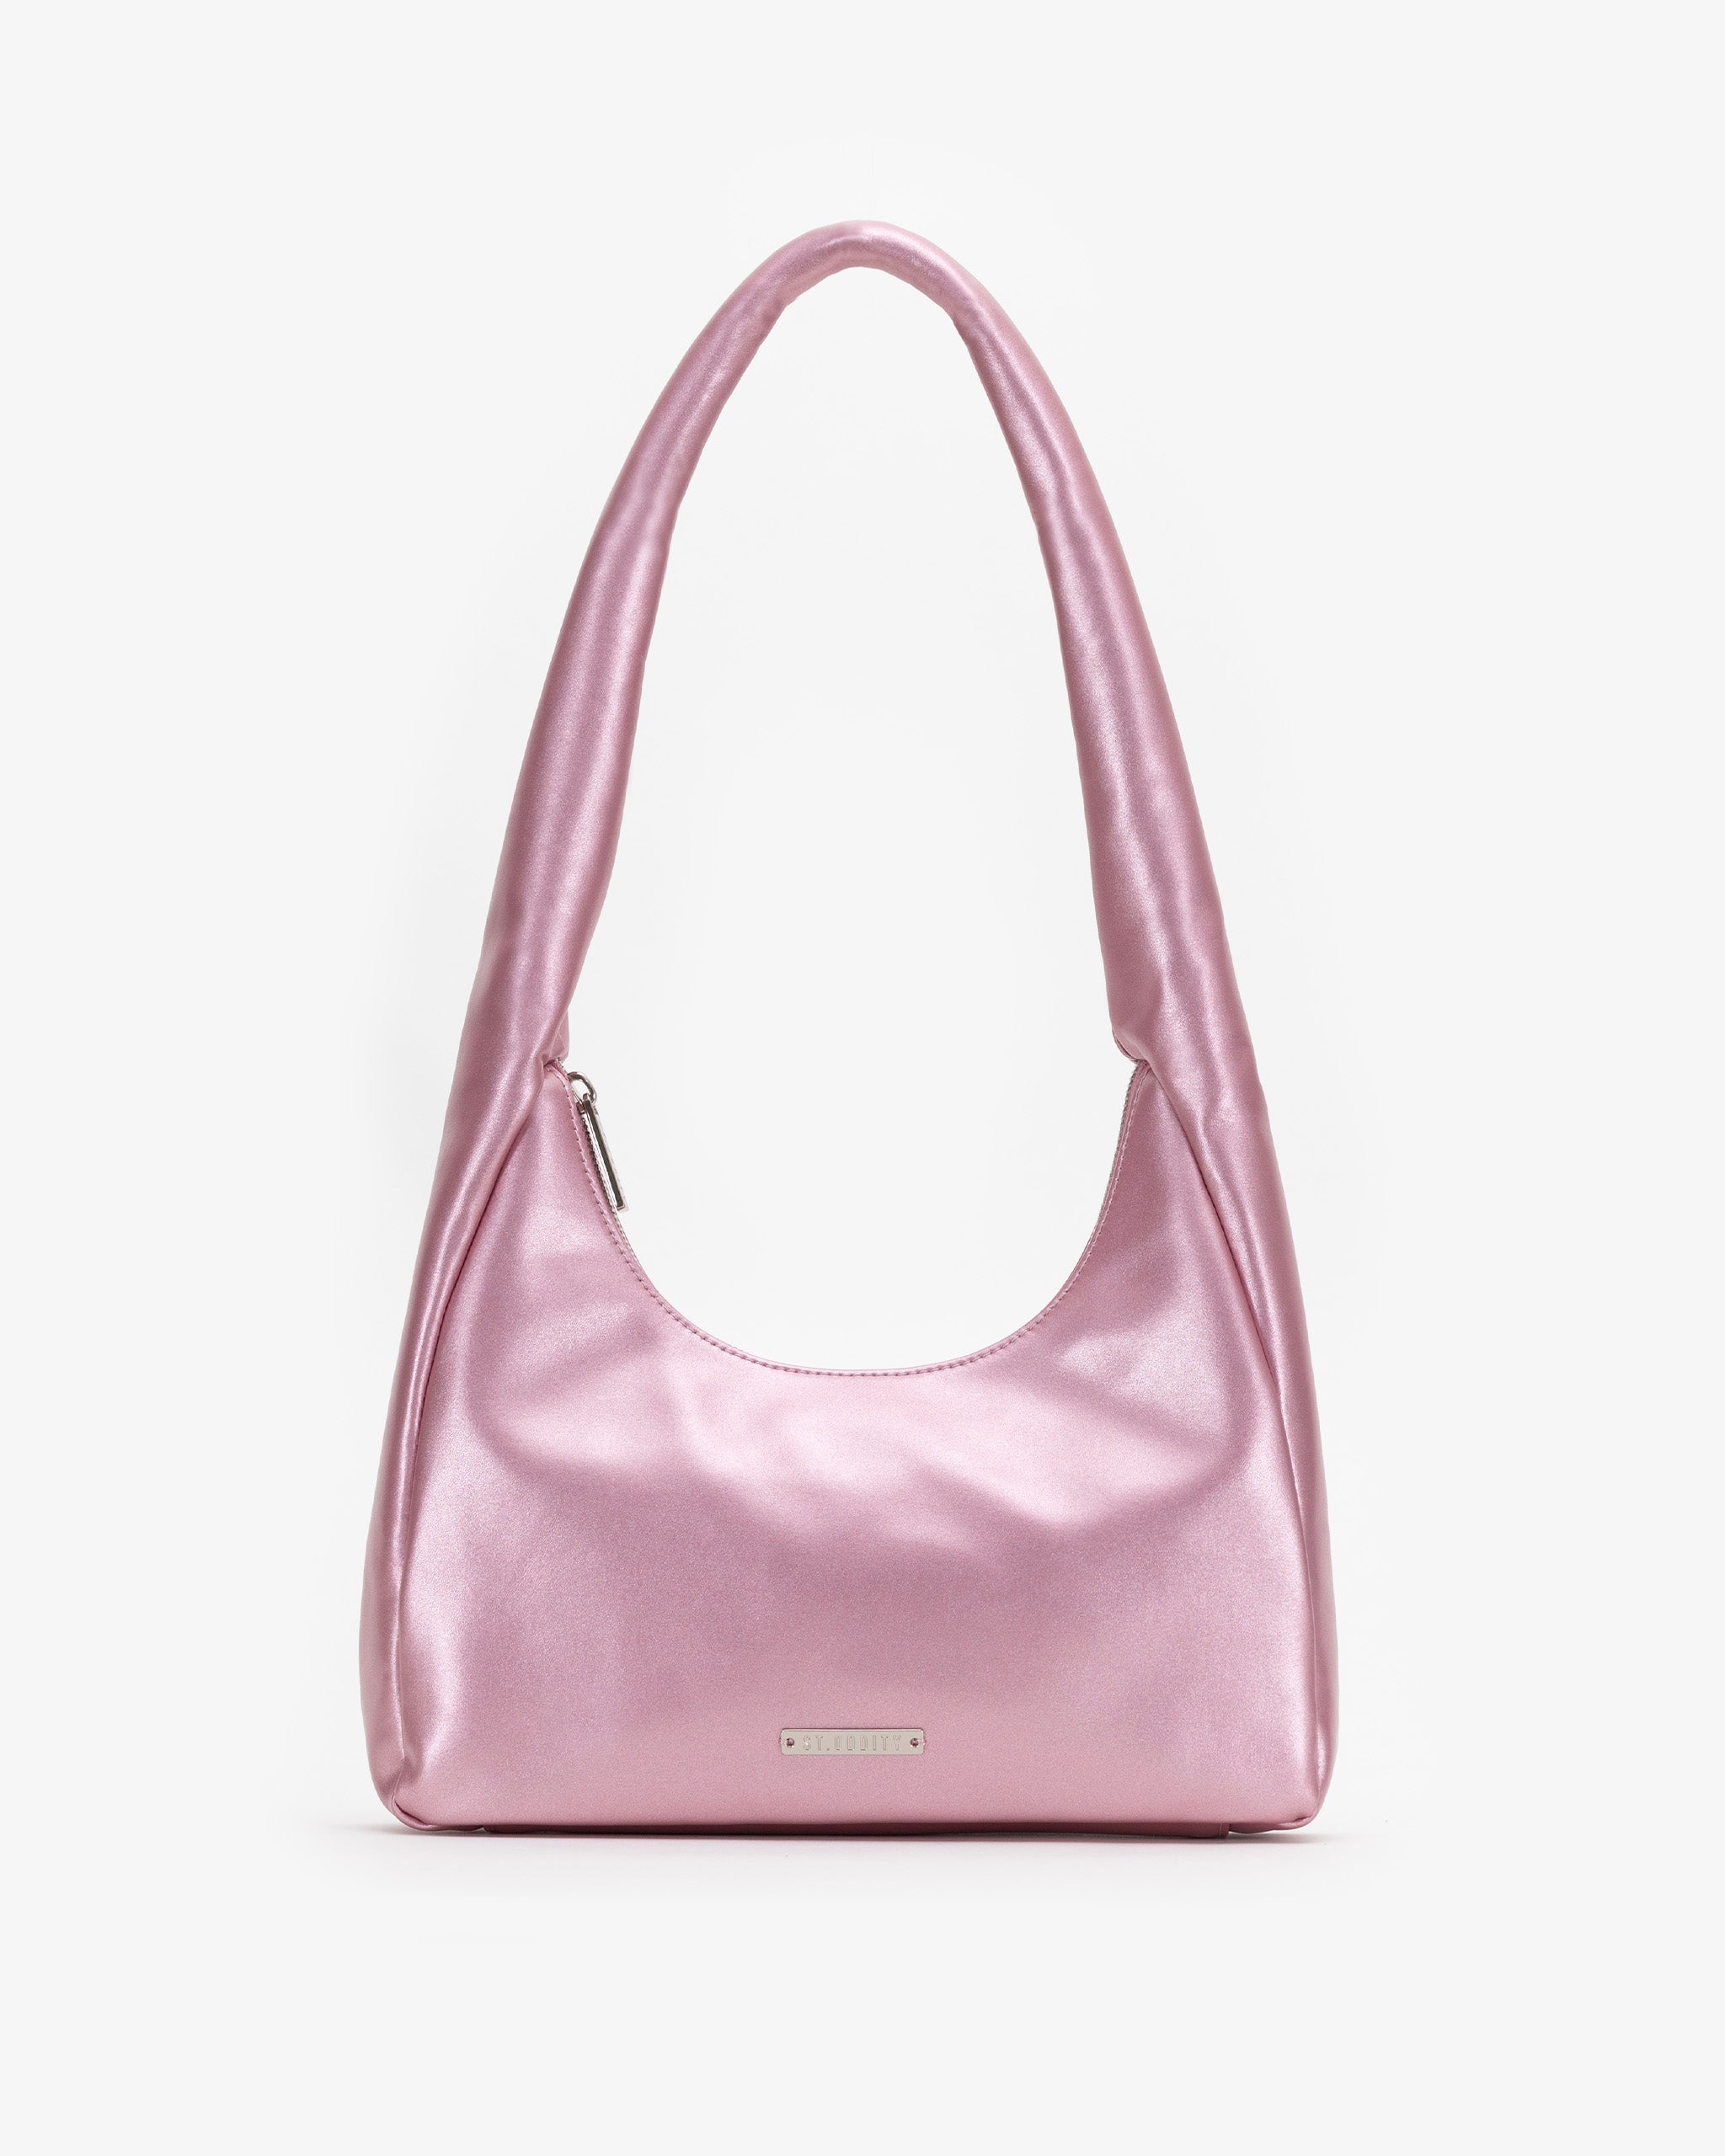 Soft Shoulder Bag in Pink Metallic